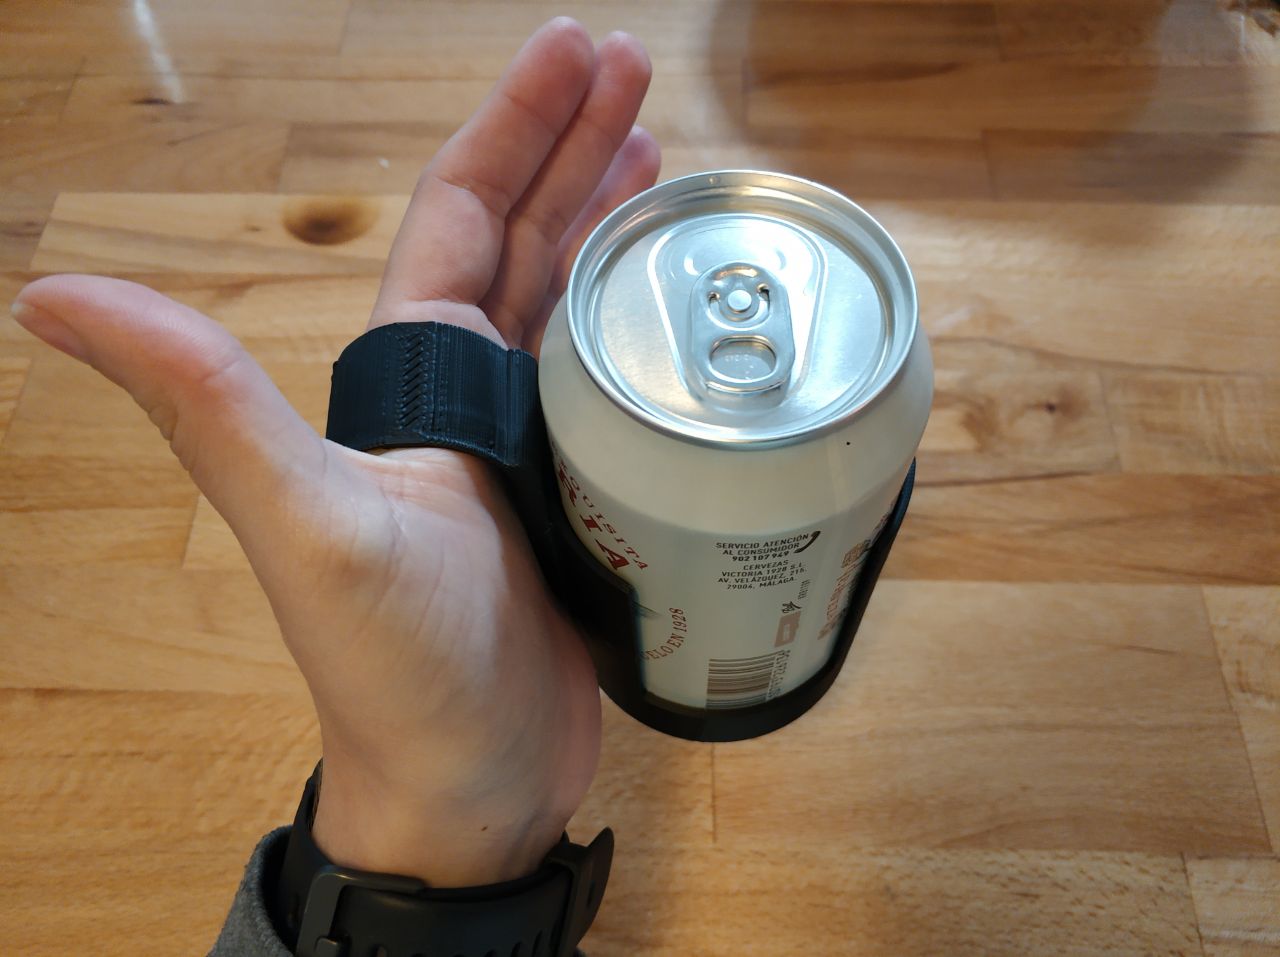 Mano sujetendo una lata de bebida con ayuda de un agarrador adaptado